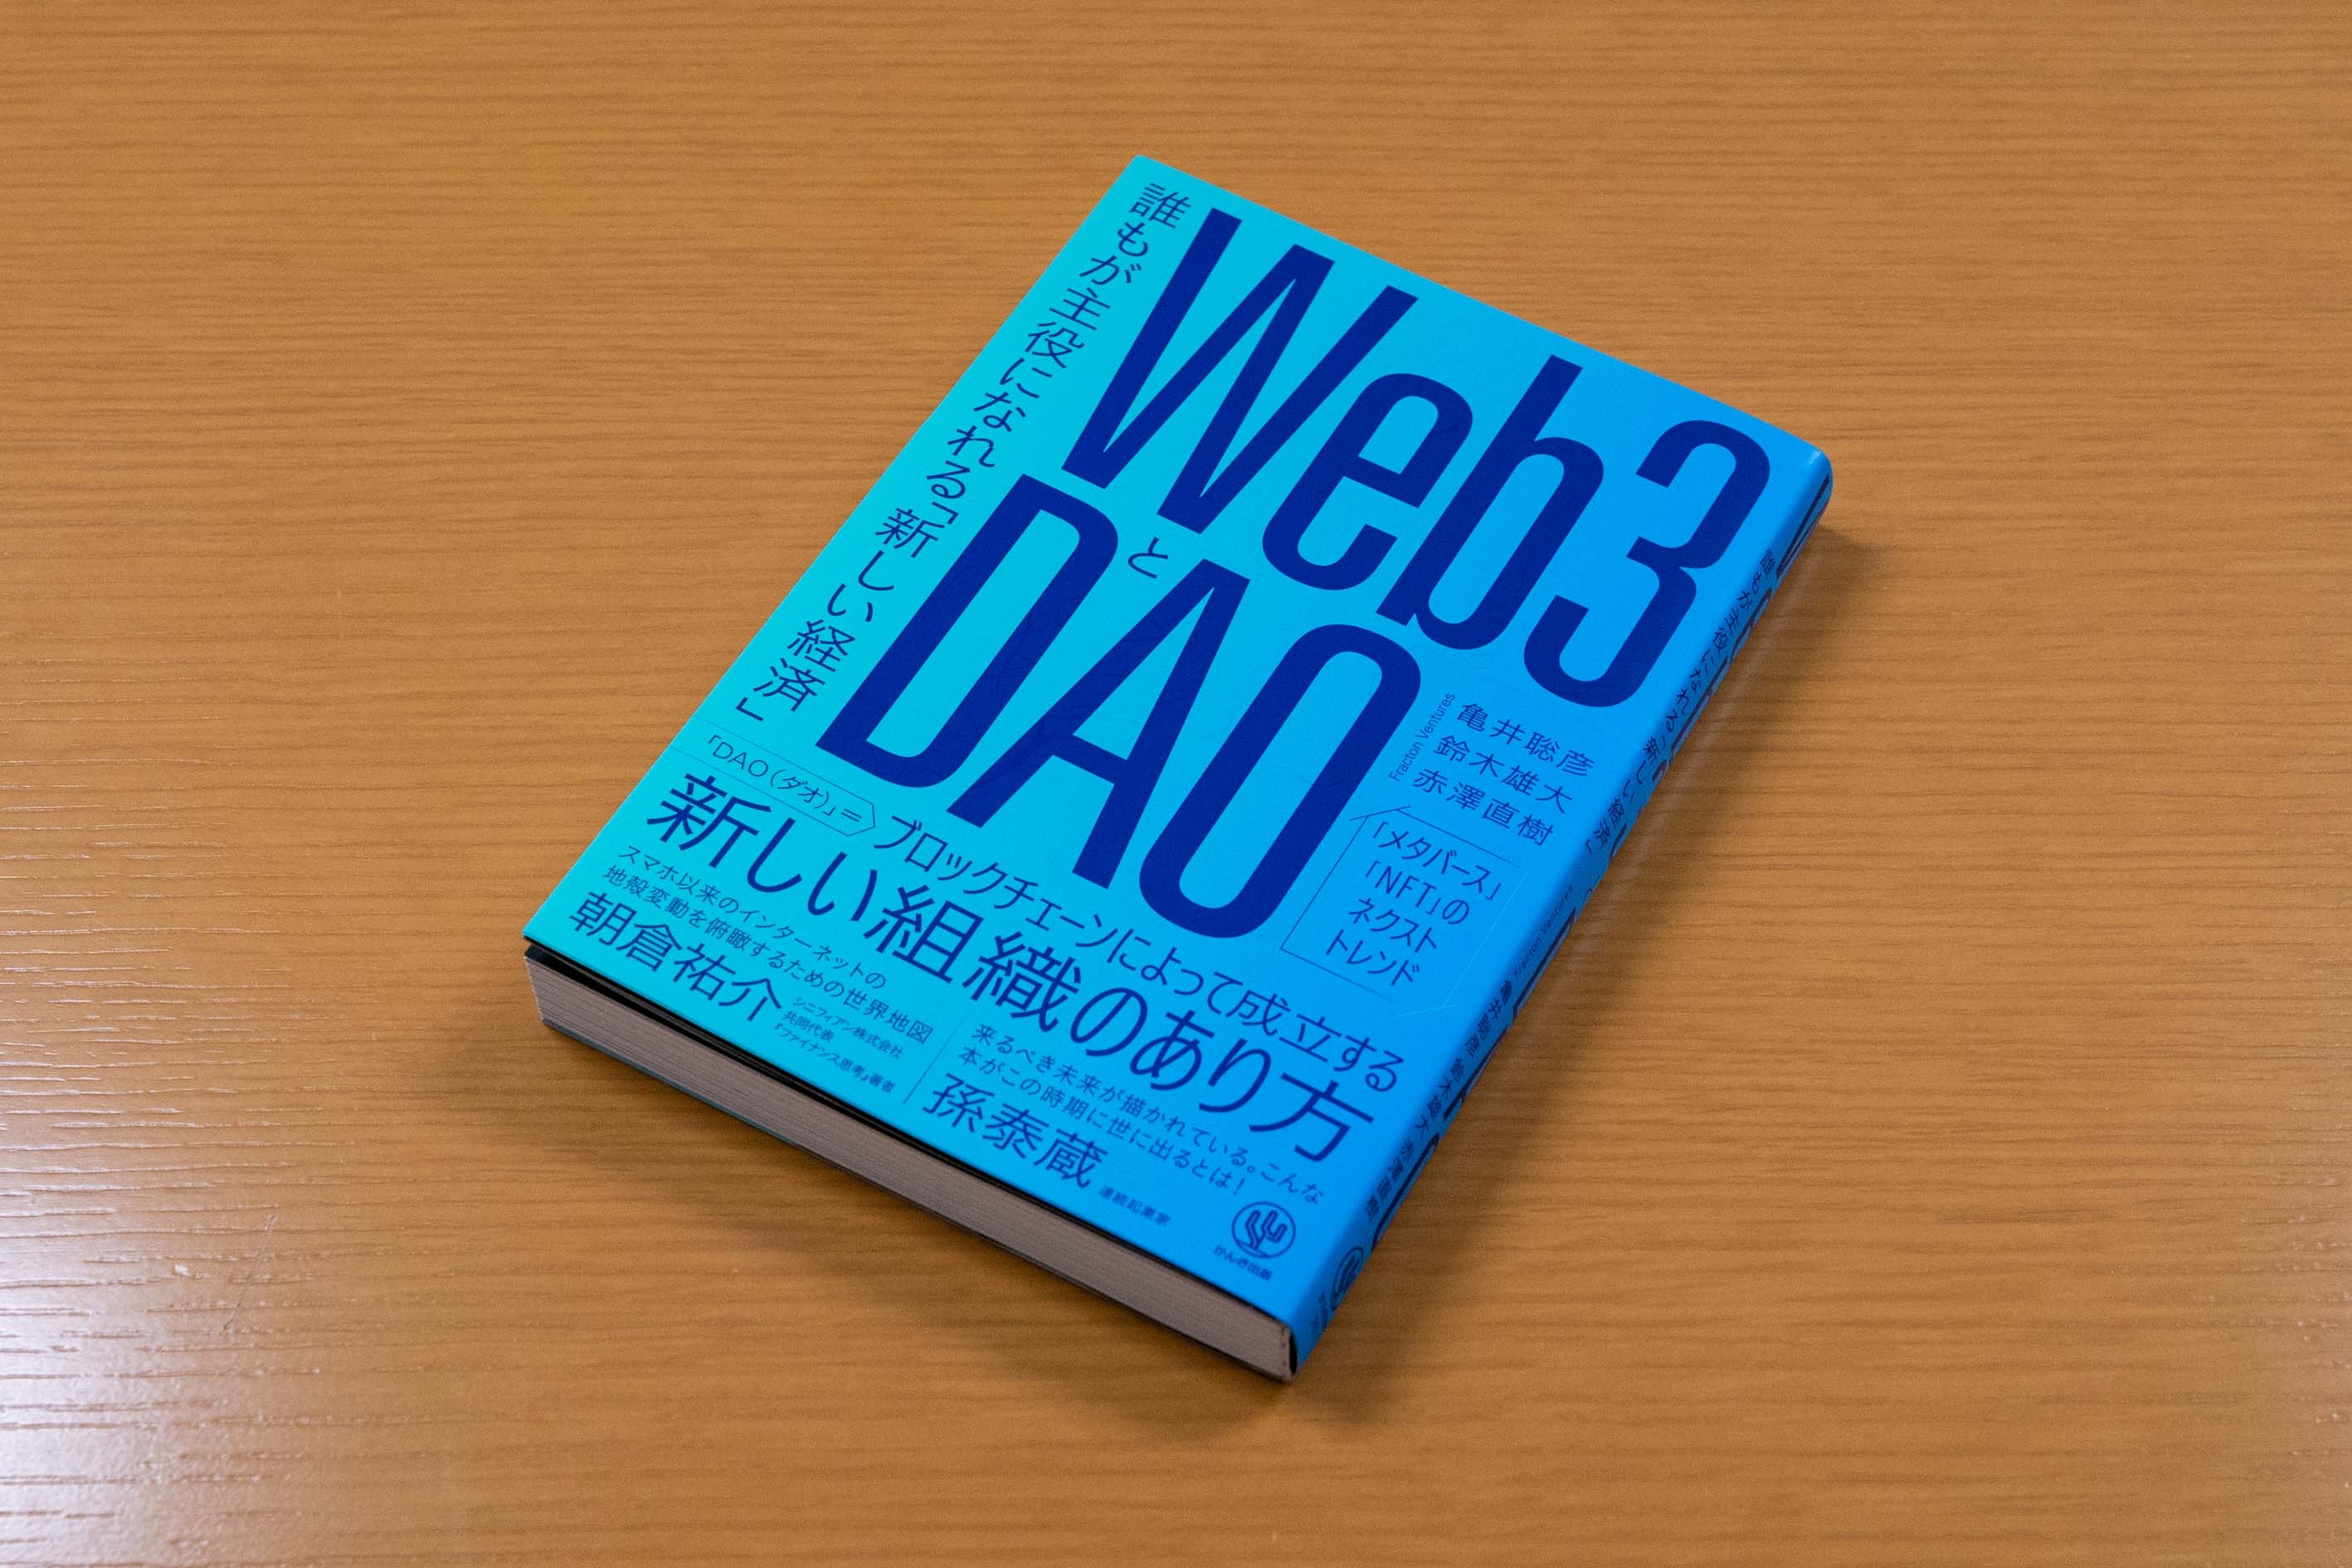 『Web3とDAO』。本書を選んだ理由は「構成が素晴らしくて、分かりやすいから」